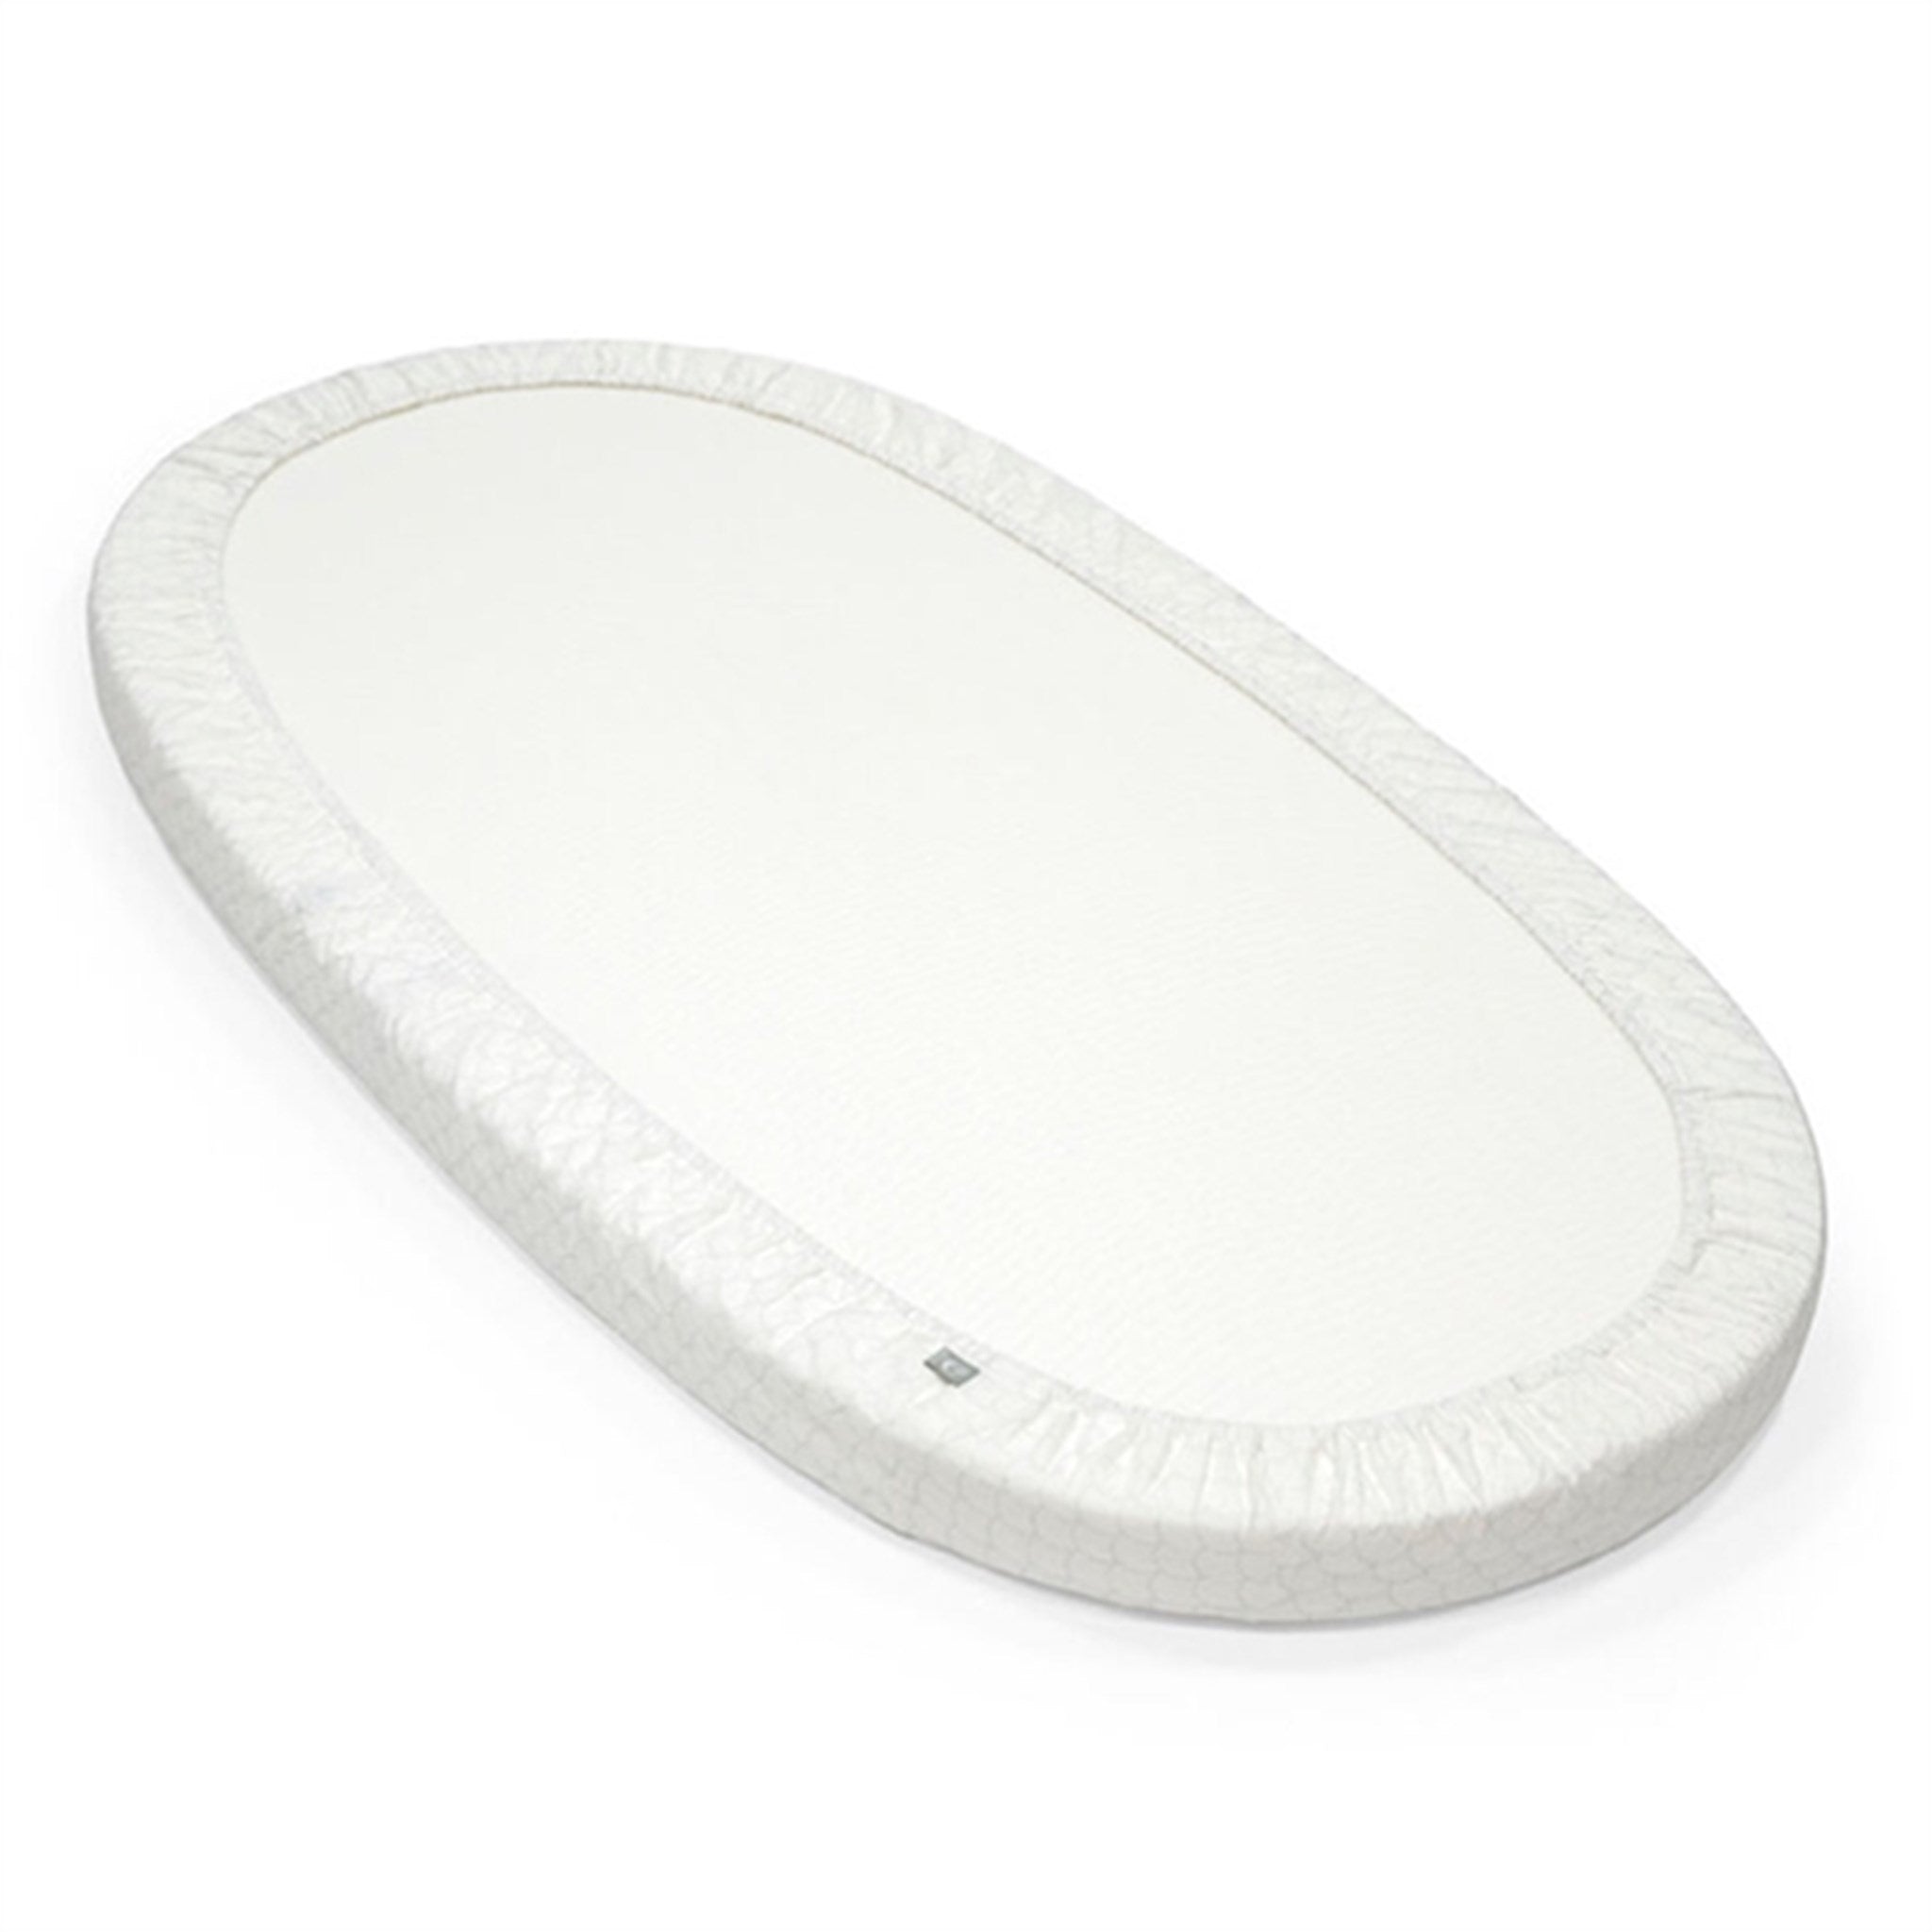 Stokke® Sleepi™ Bed Fitted Sheet White V3 3